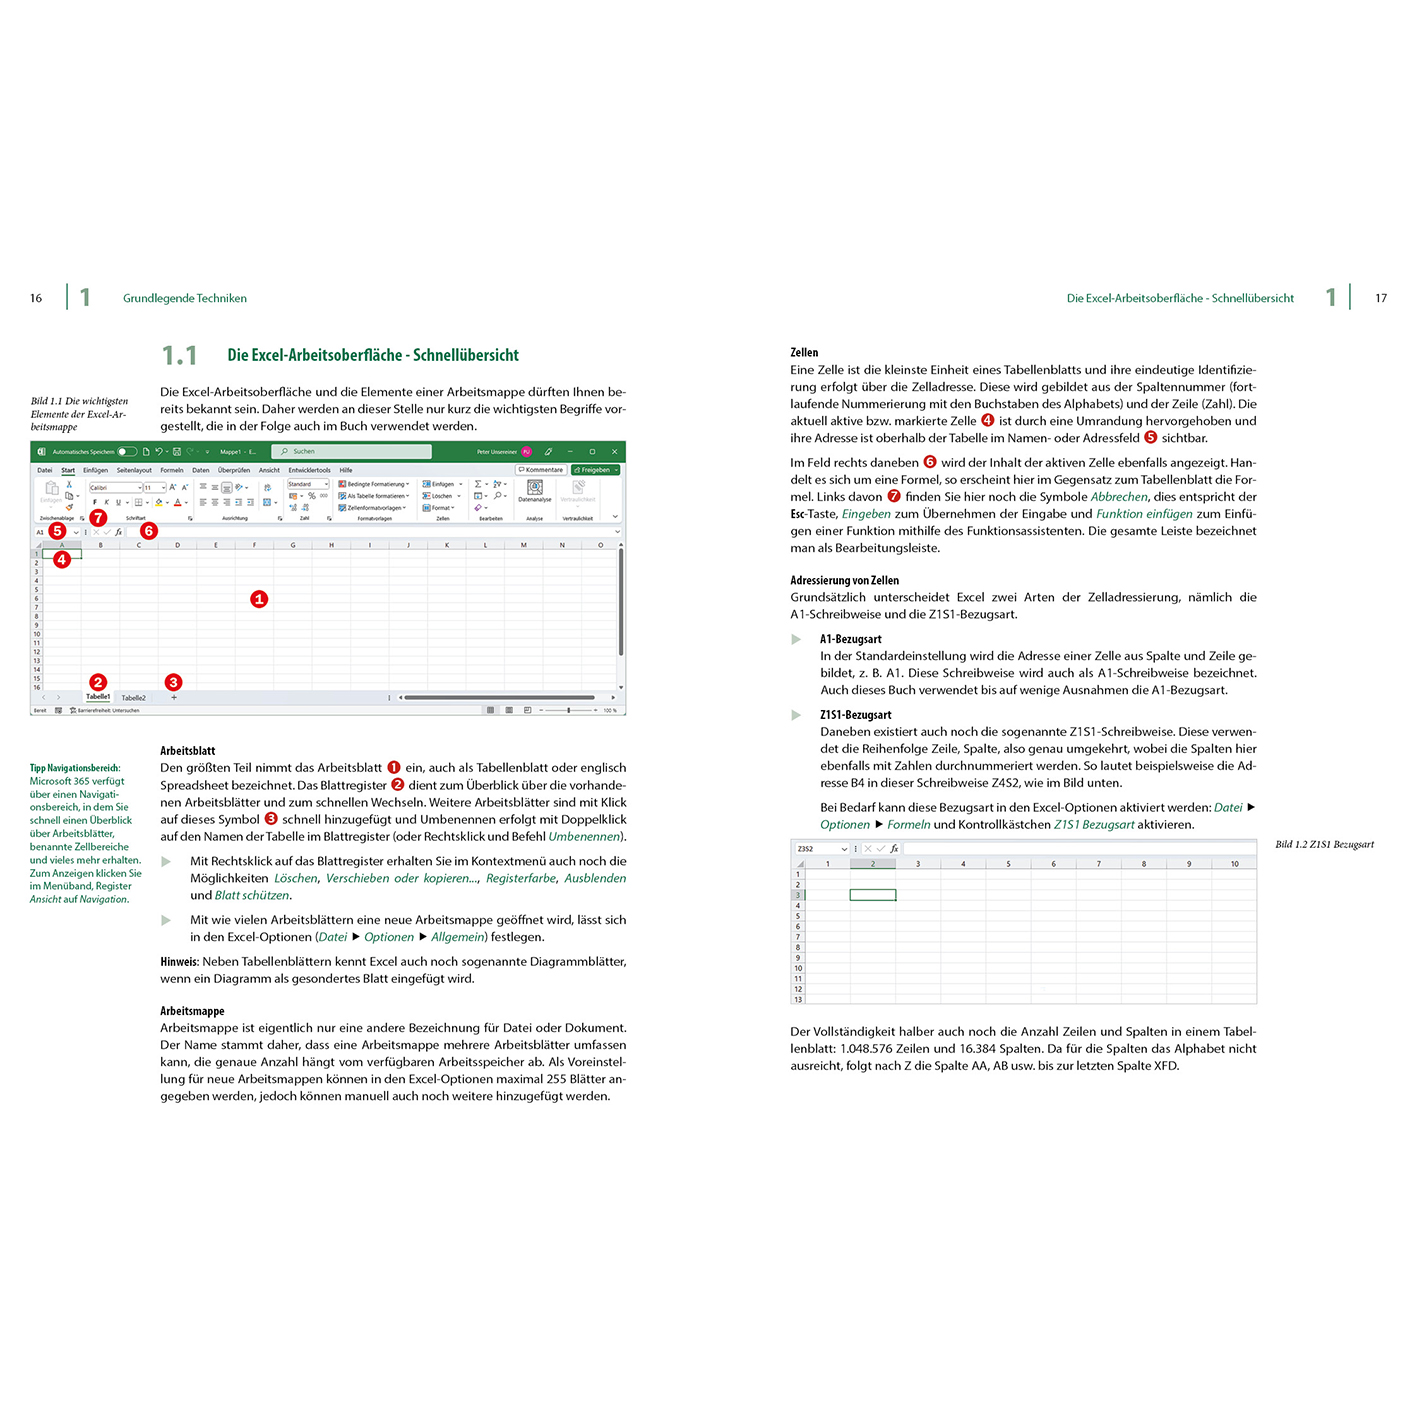 Excel Funktionen und & 2013-2021 Microsoft Excel 365 Formeln für